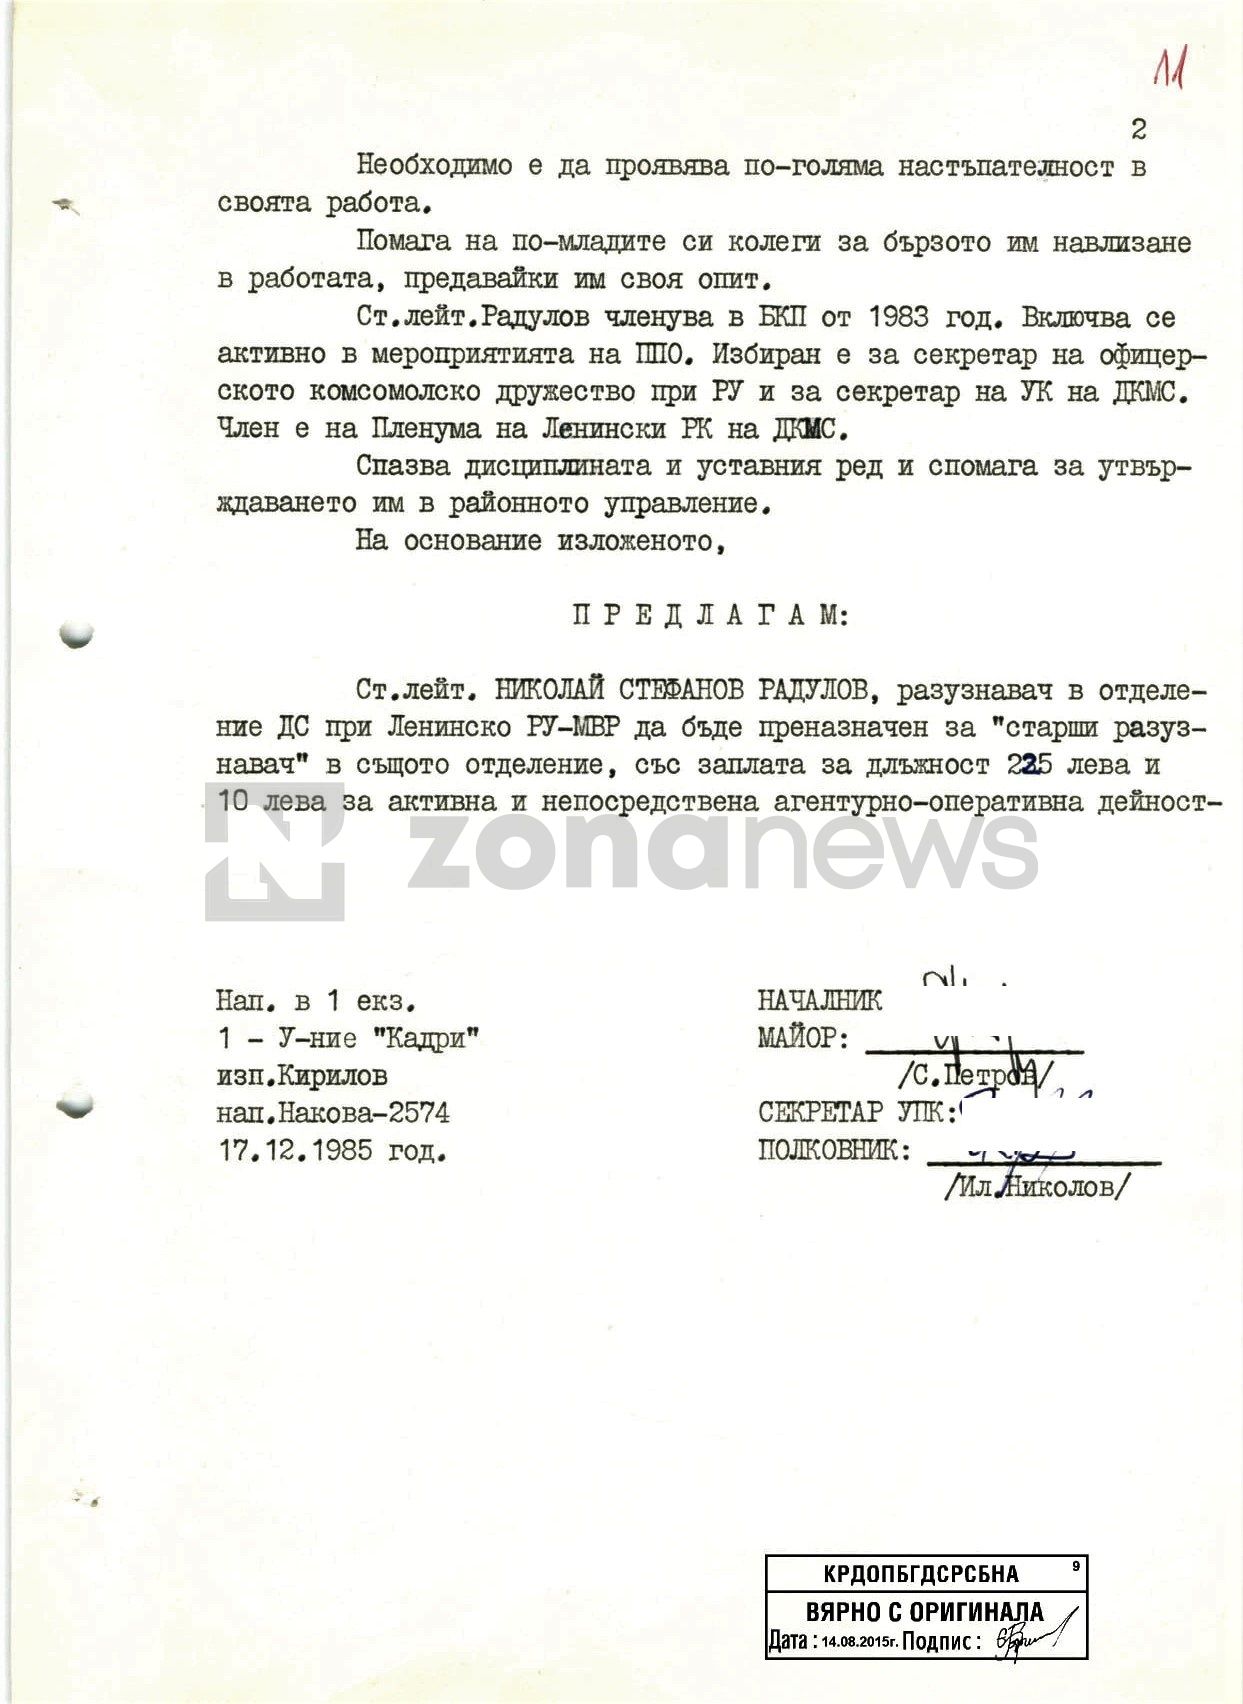 Документи от личното кадрово дело на Н.Радулов като офицер от ДС```